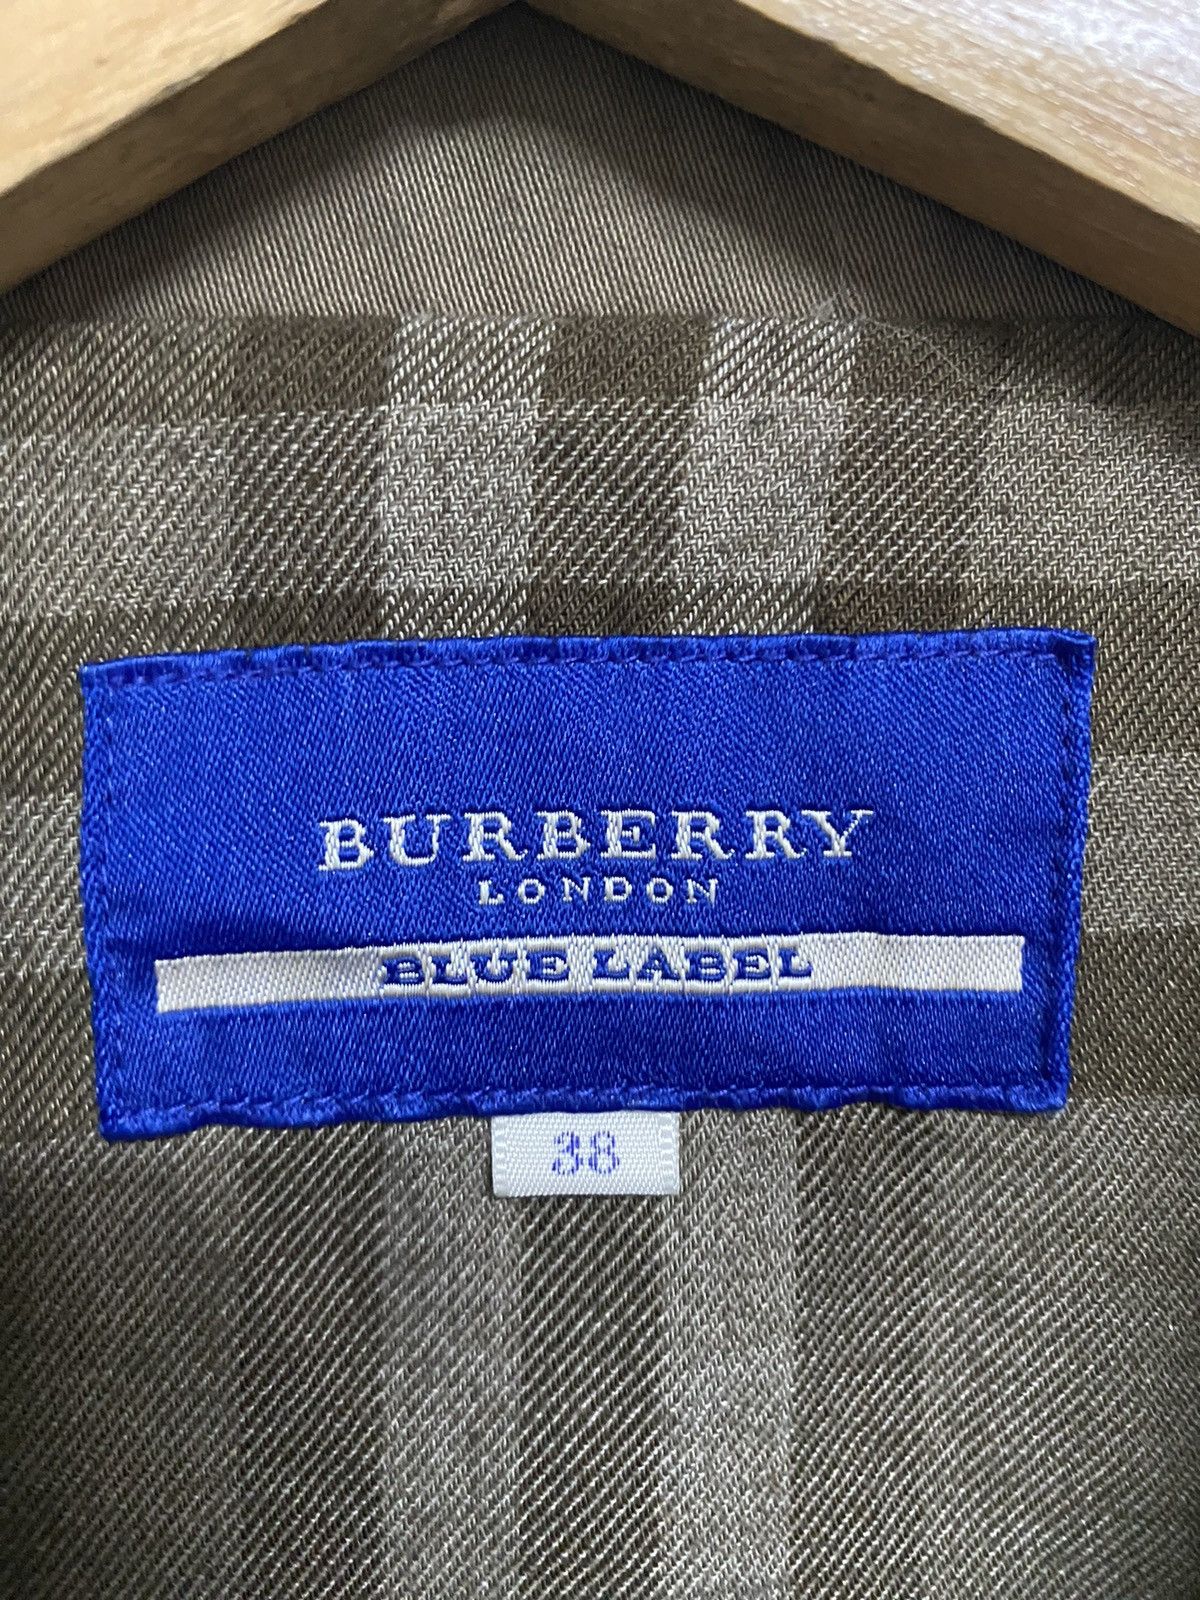 Burberry Blue Label Nova Check Vest Jacket Size 38 - 8